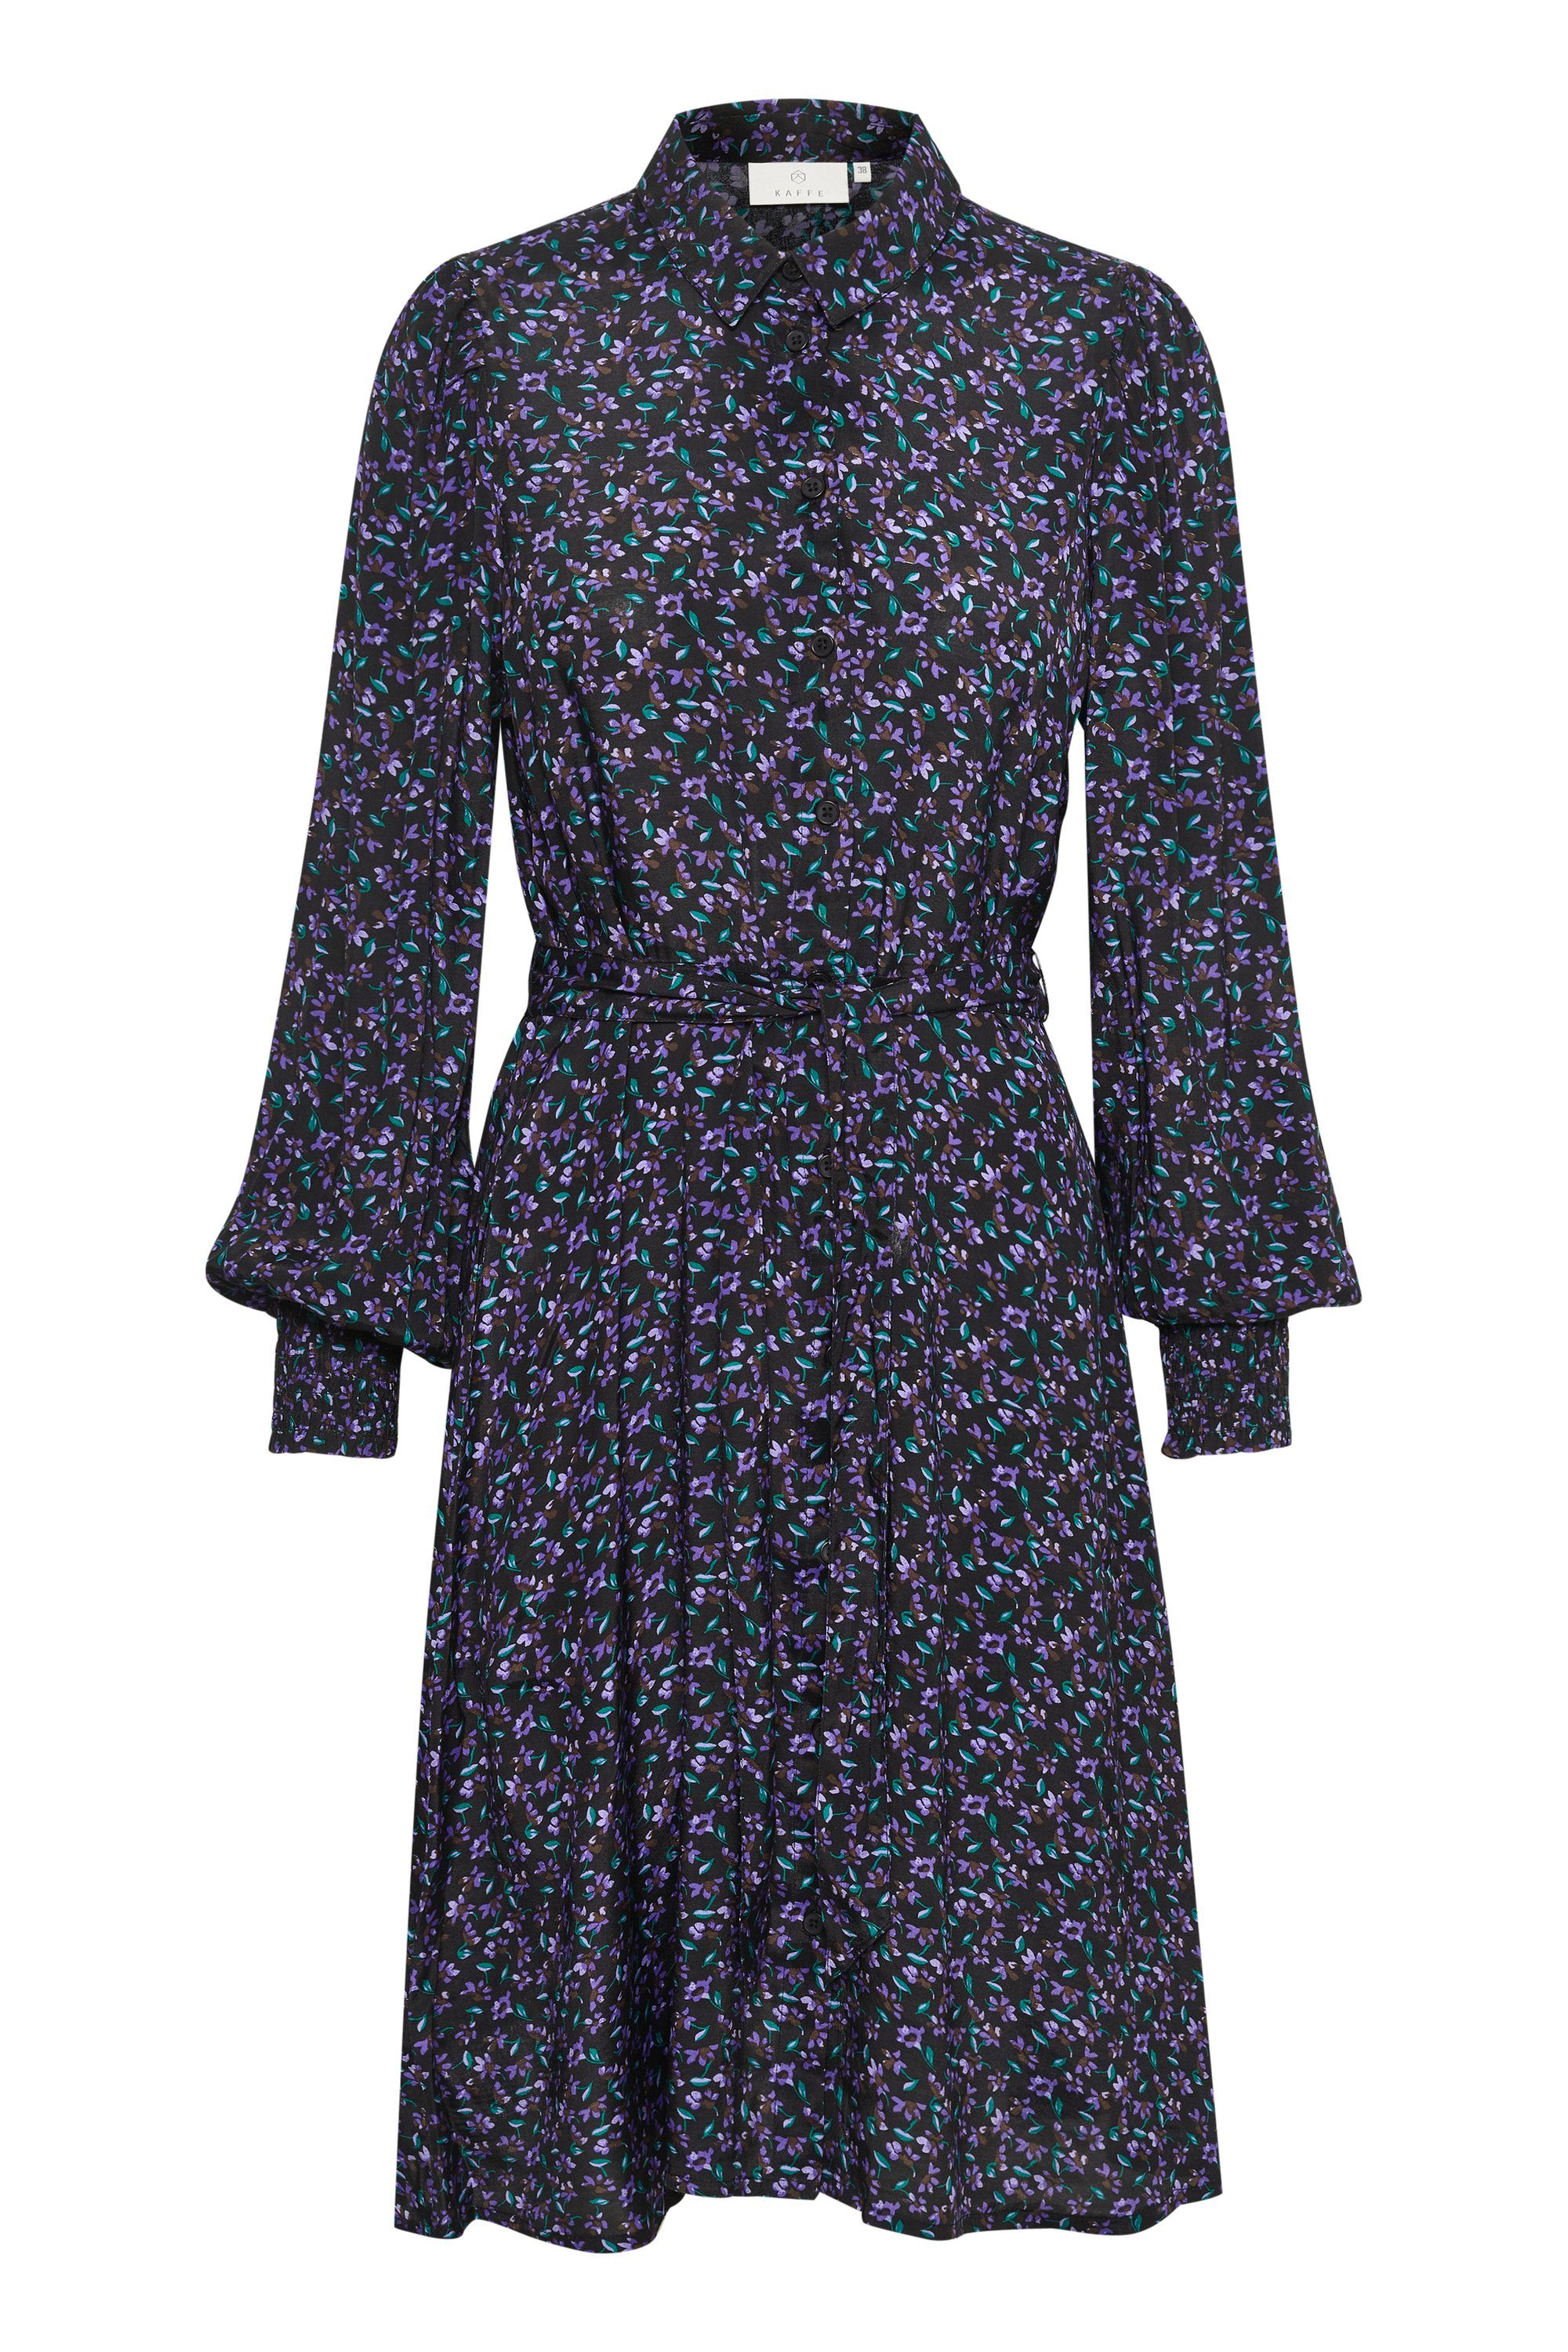 KAFFE Jerseykleid Kleid KApollie Heliotrope Flower Print